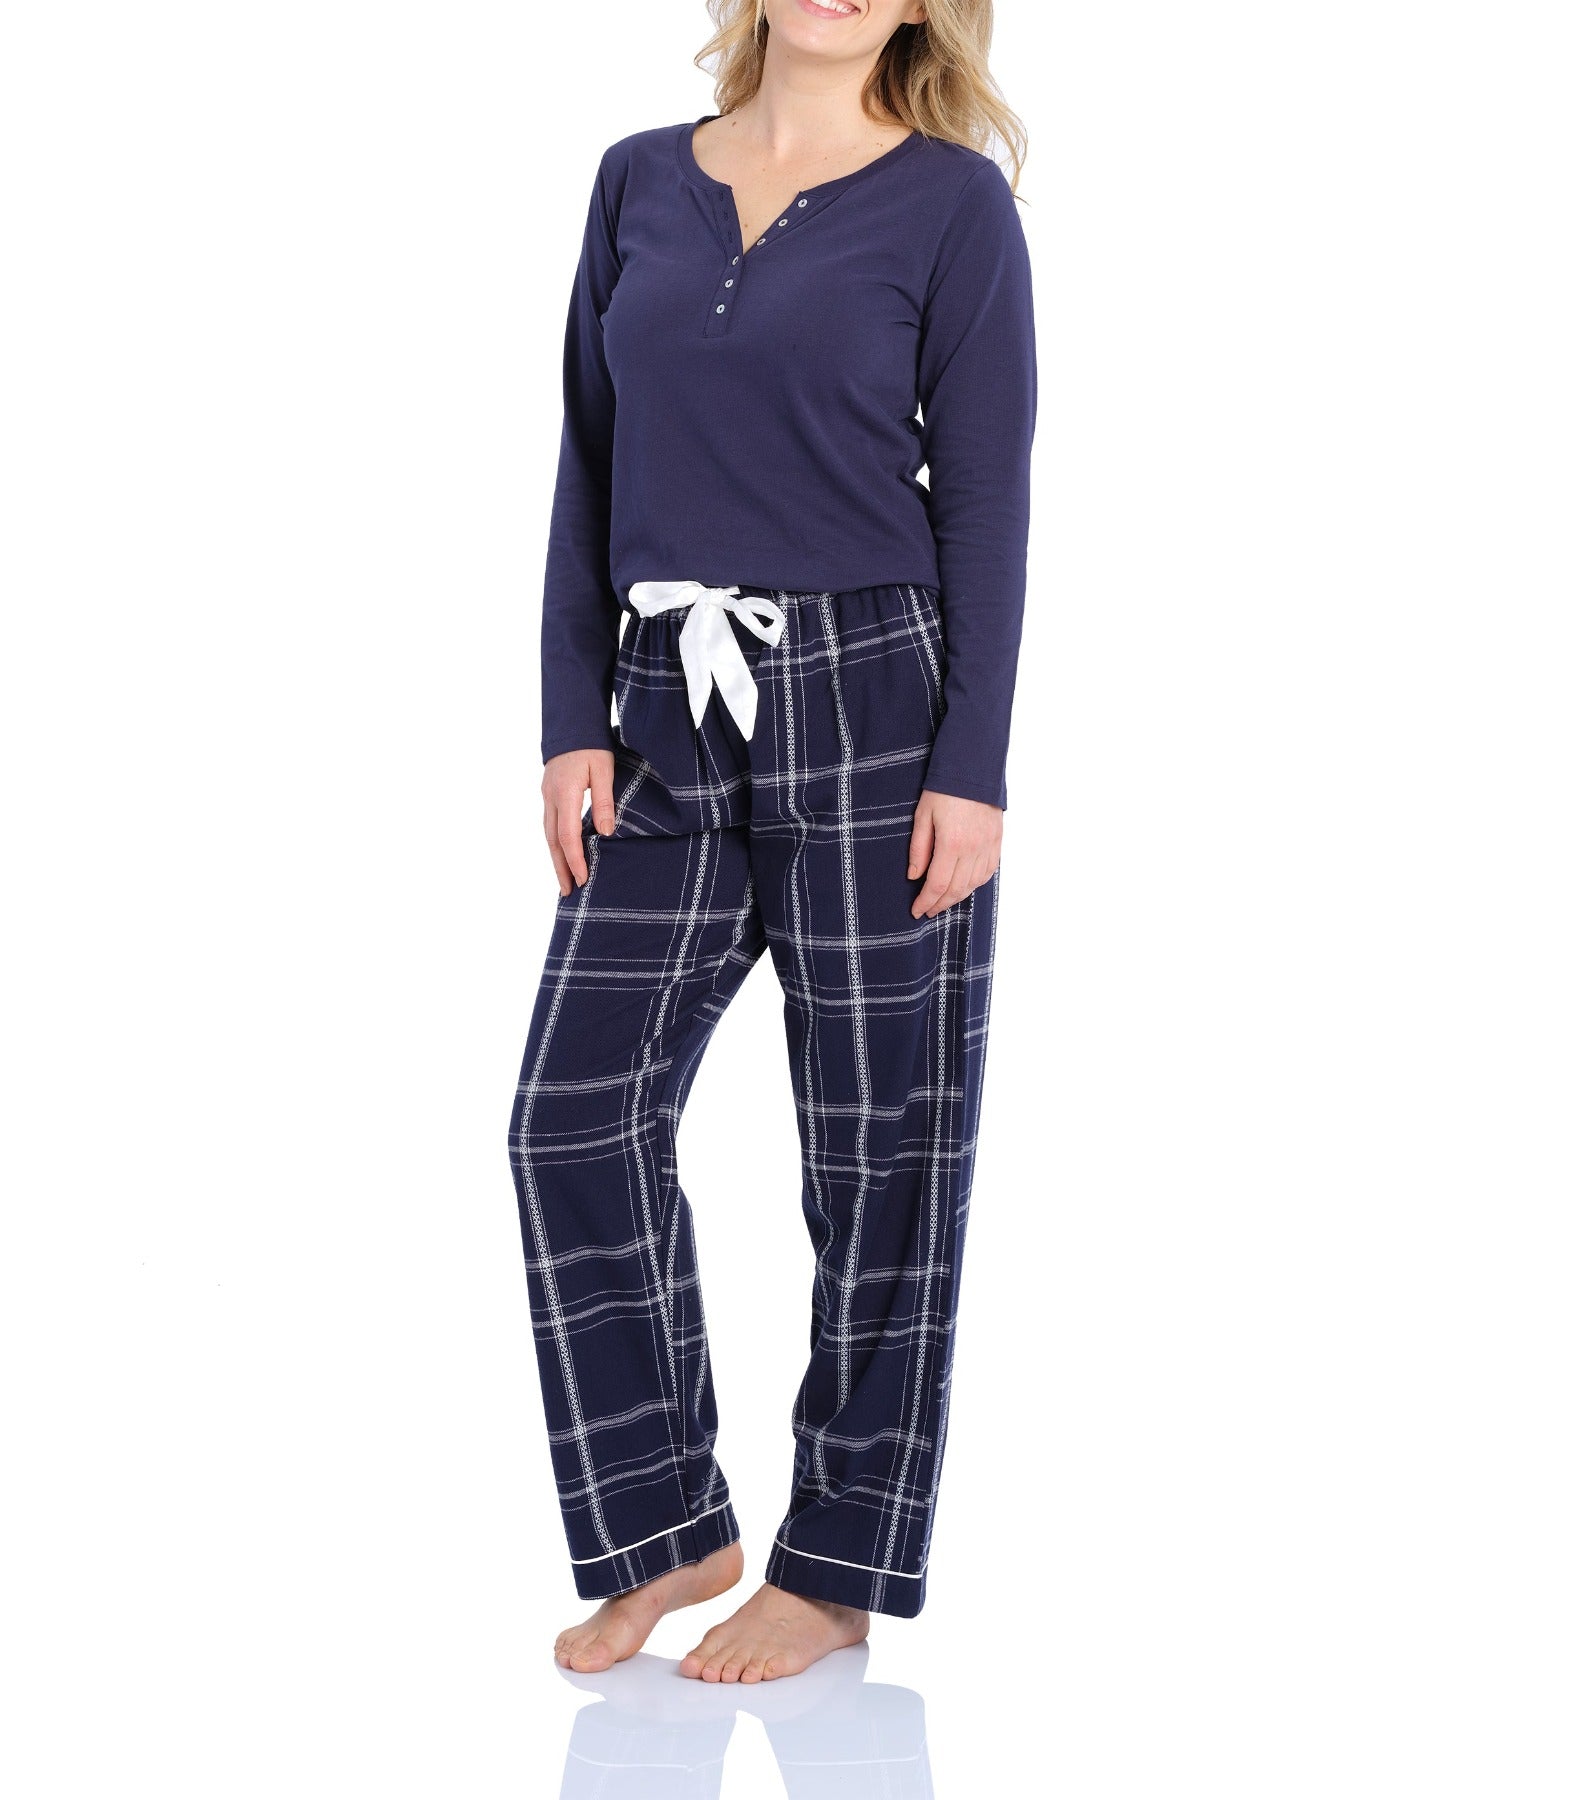 Women's Flannelette Sleepwear & Pyjamas | Magnolia Lounge Australia